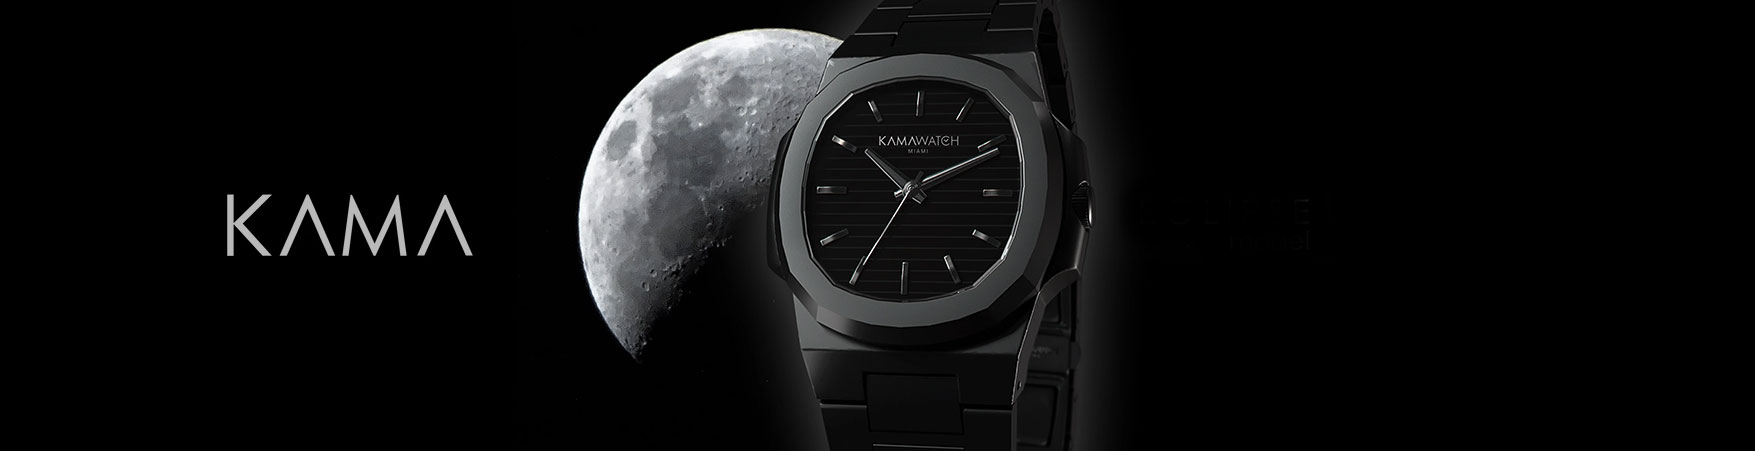 Kama Watches